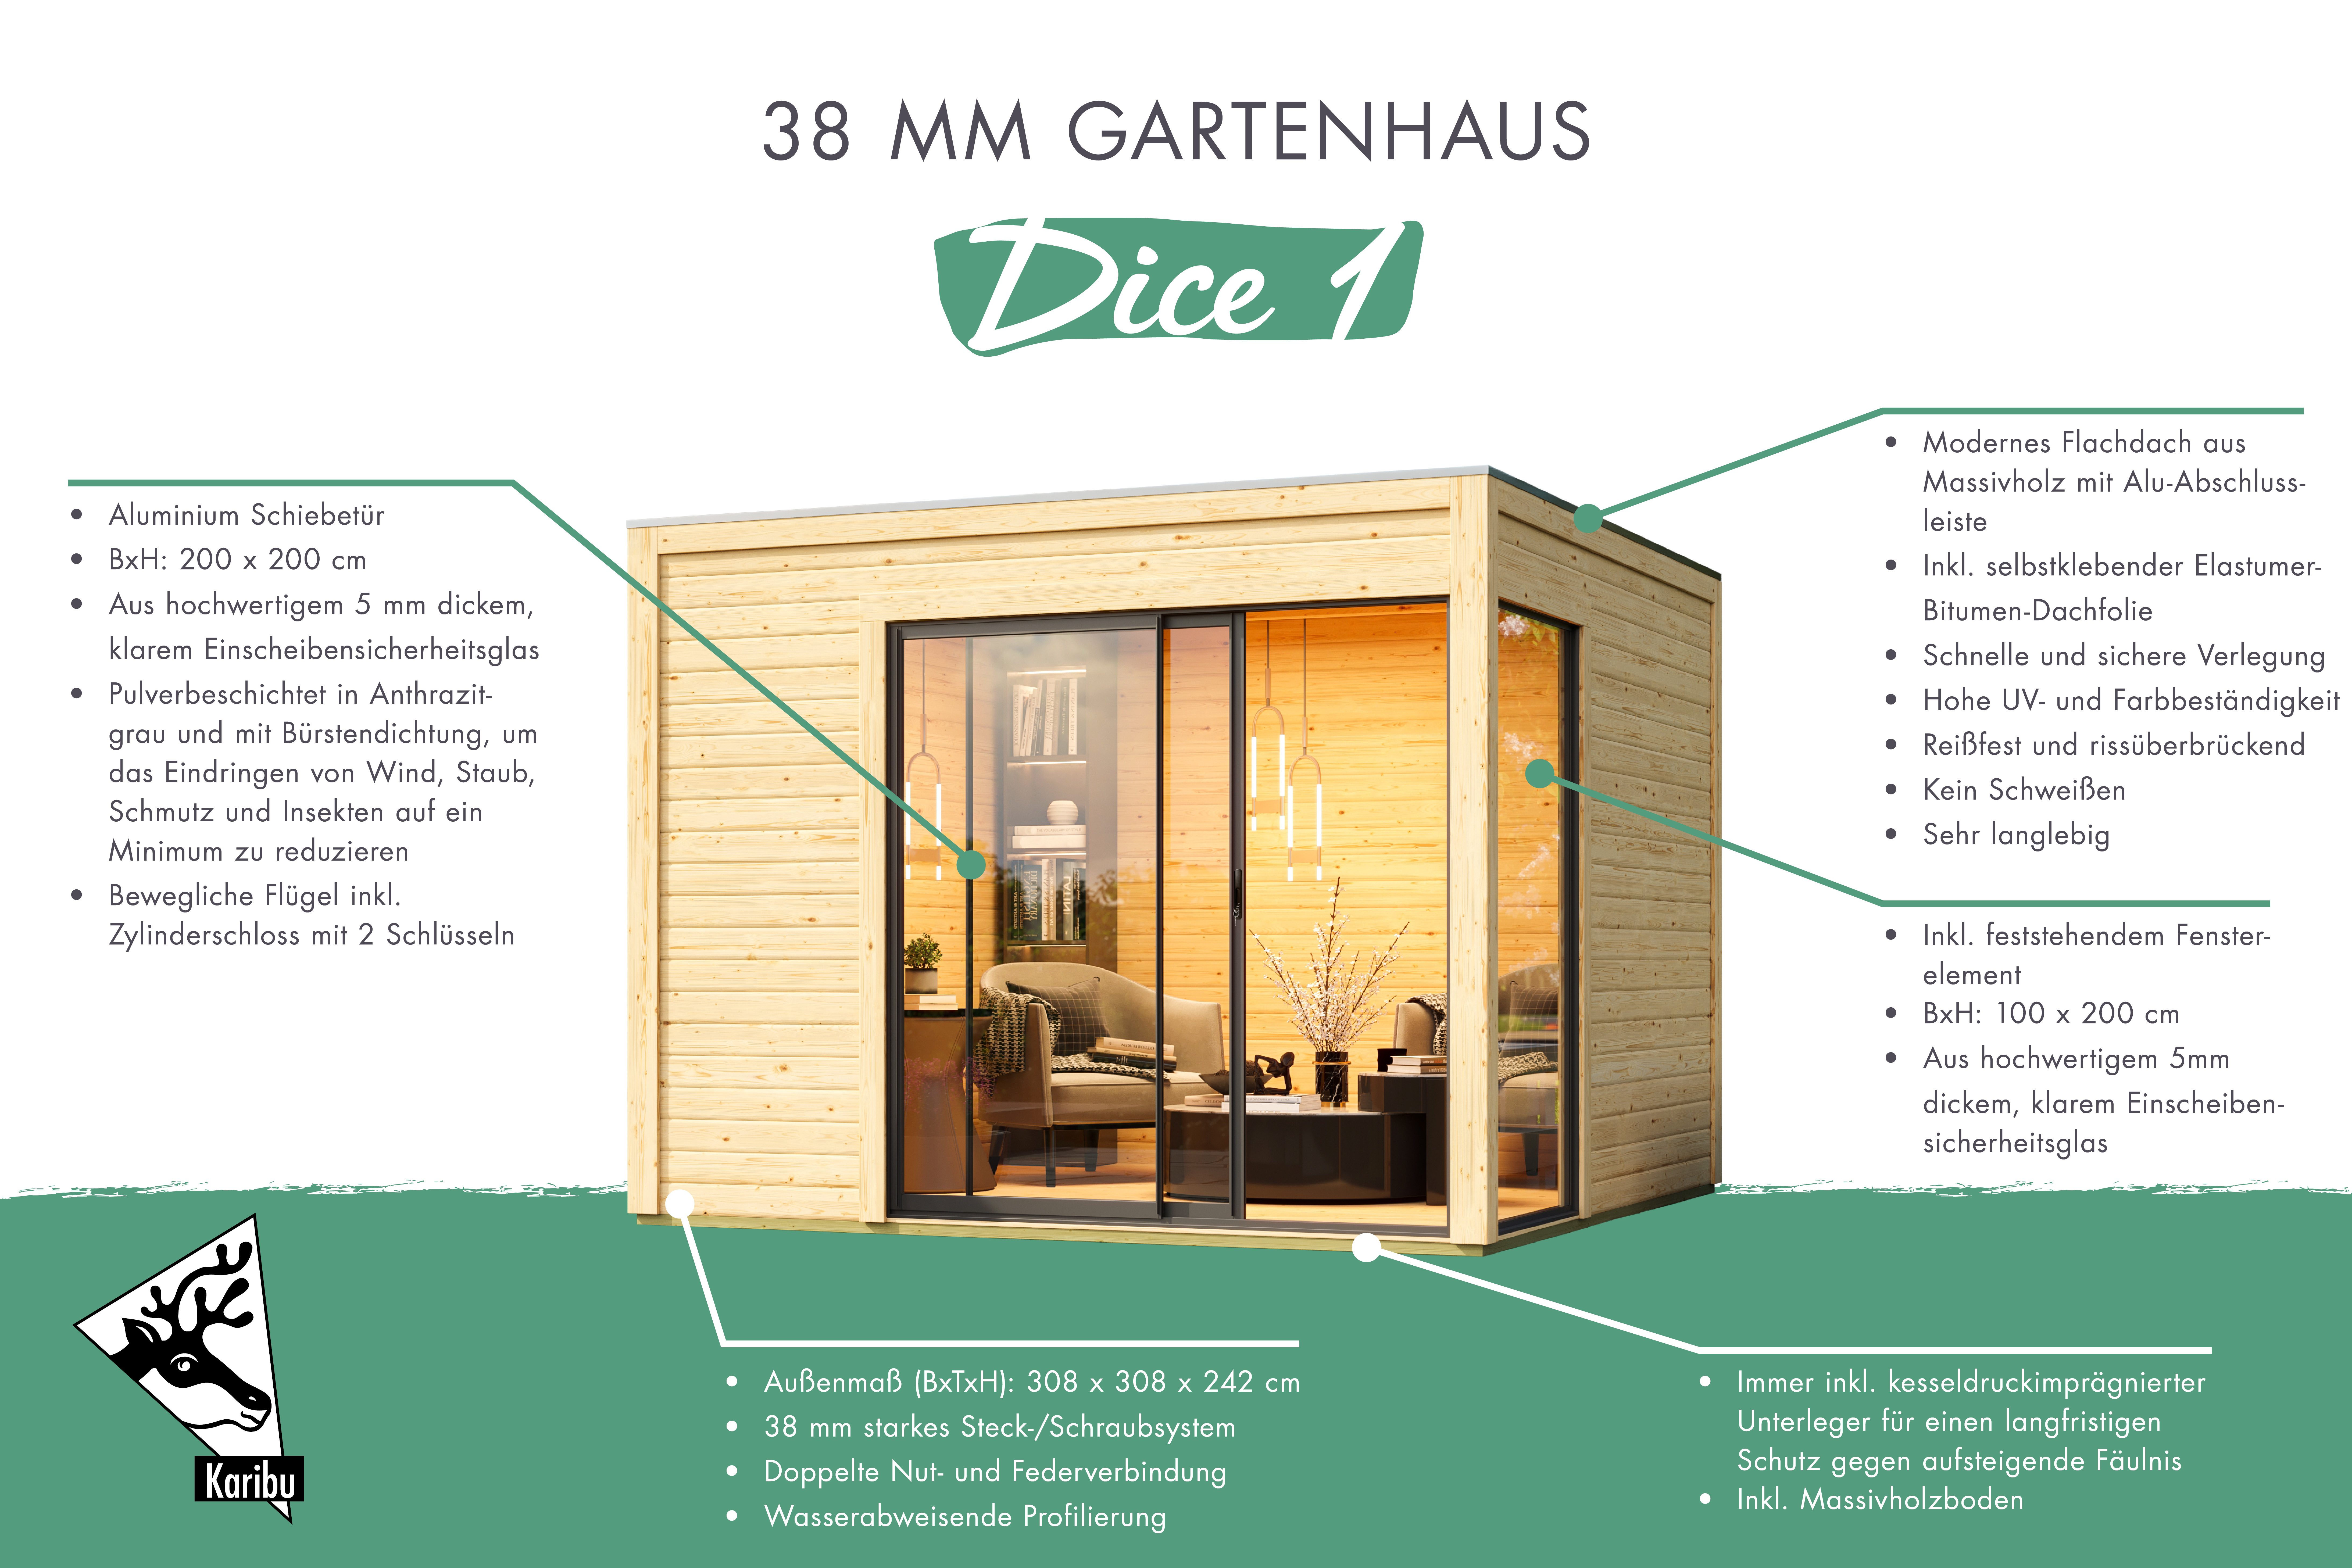 Gartenhaus Dice 1